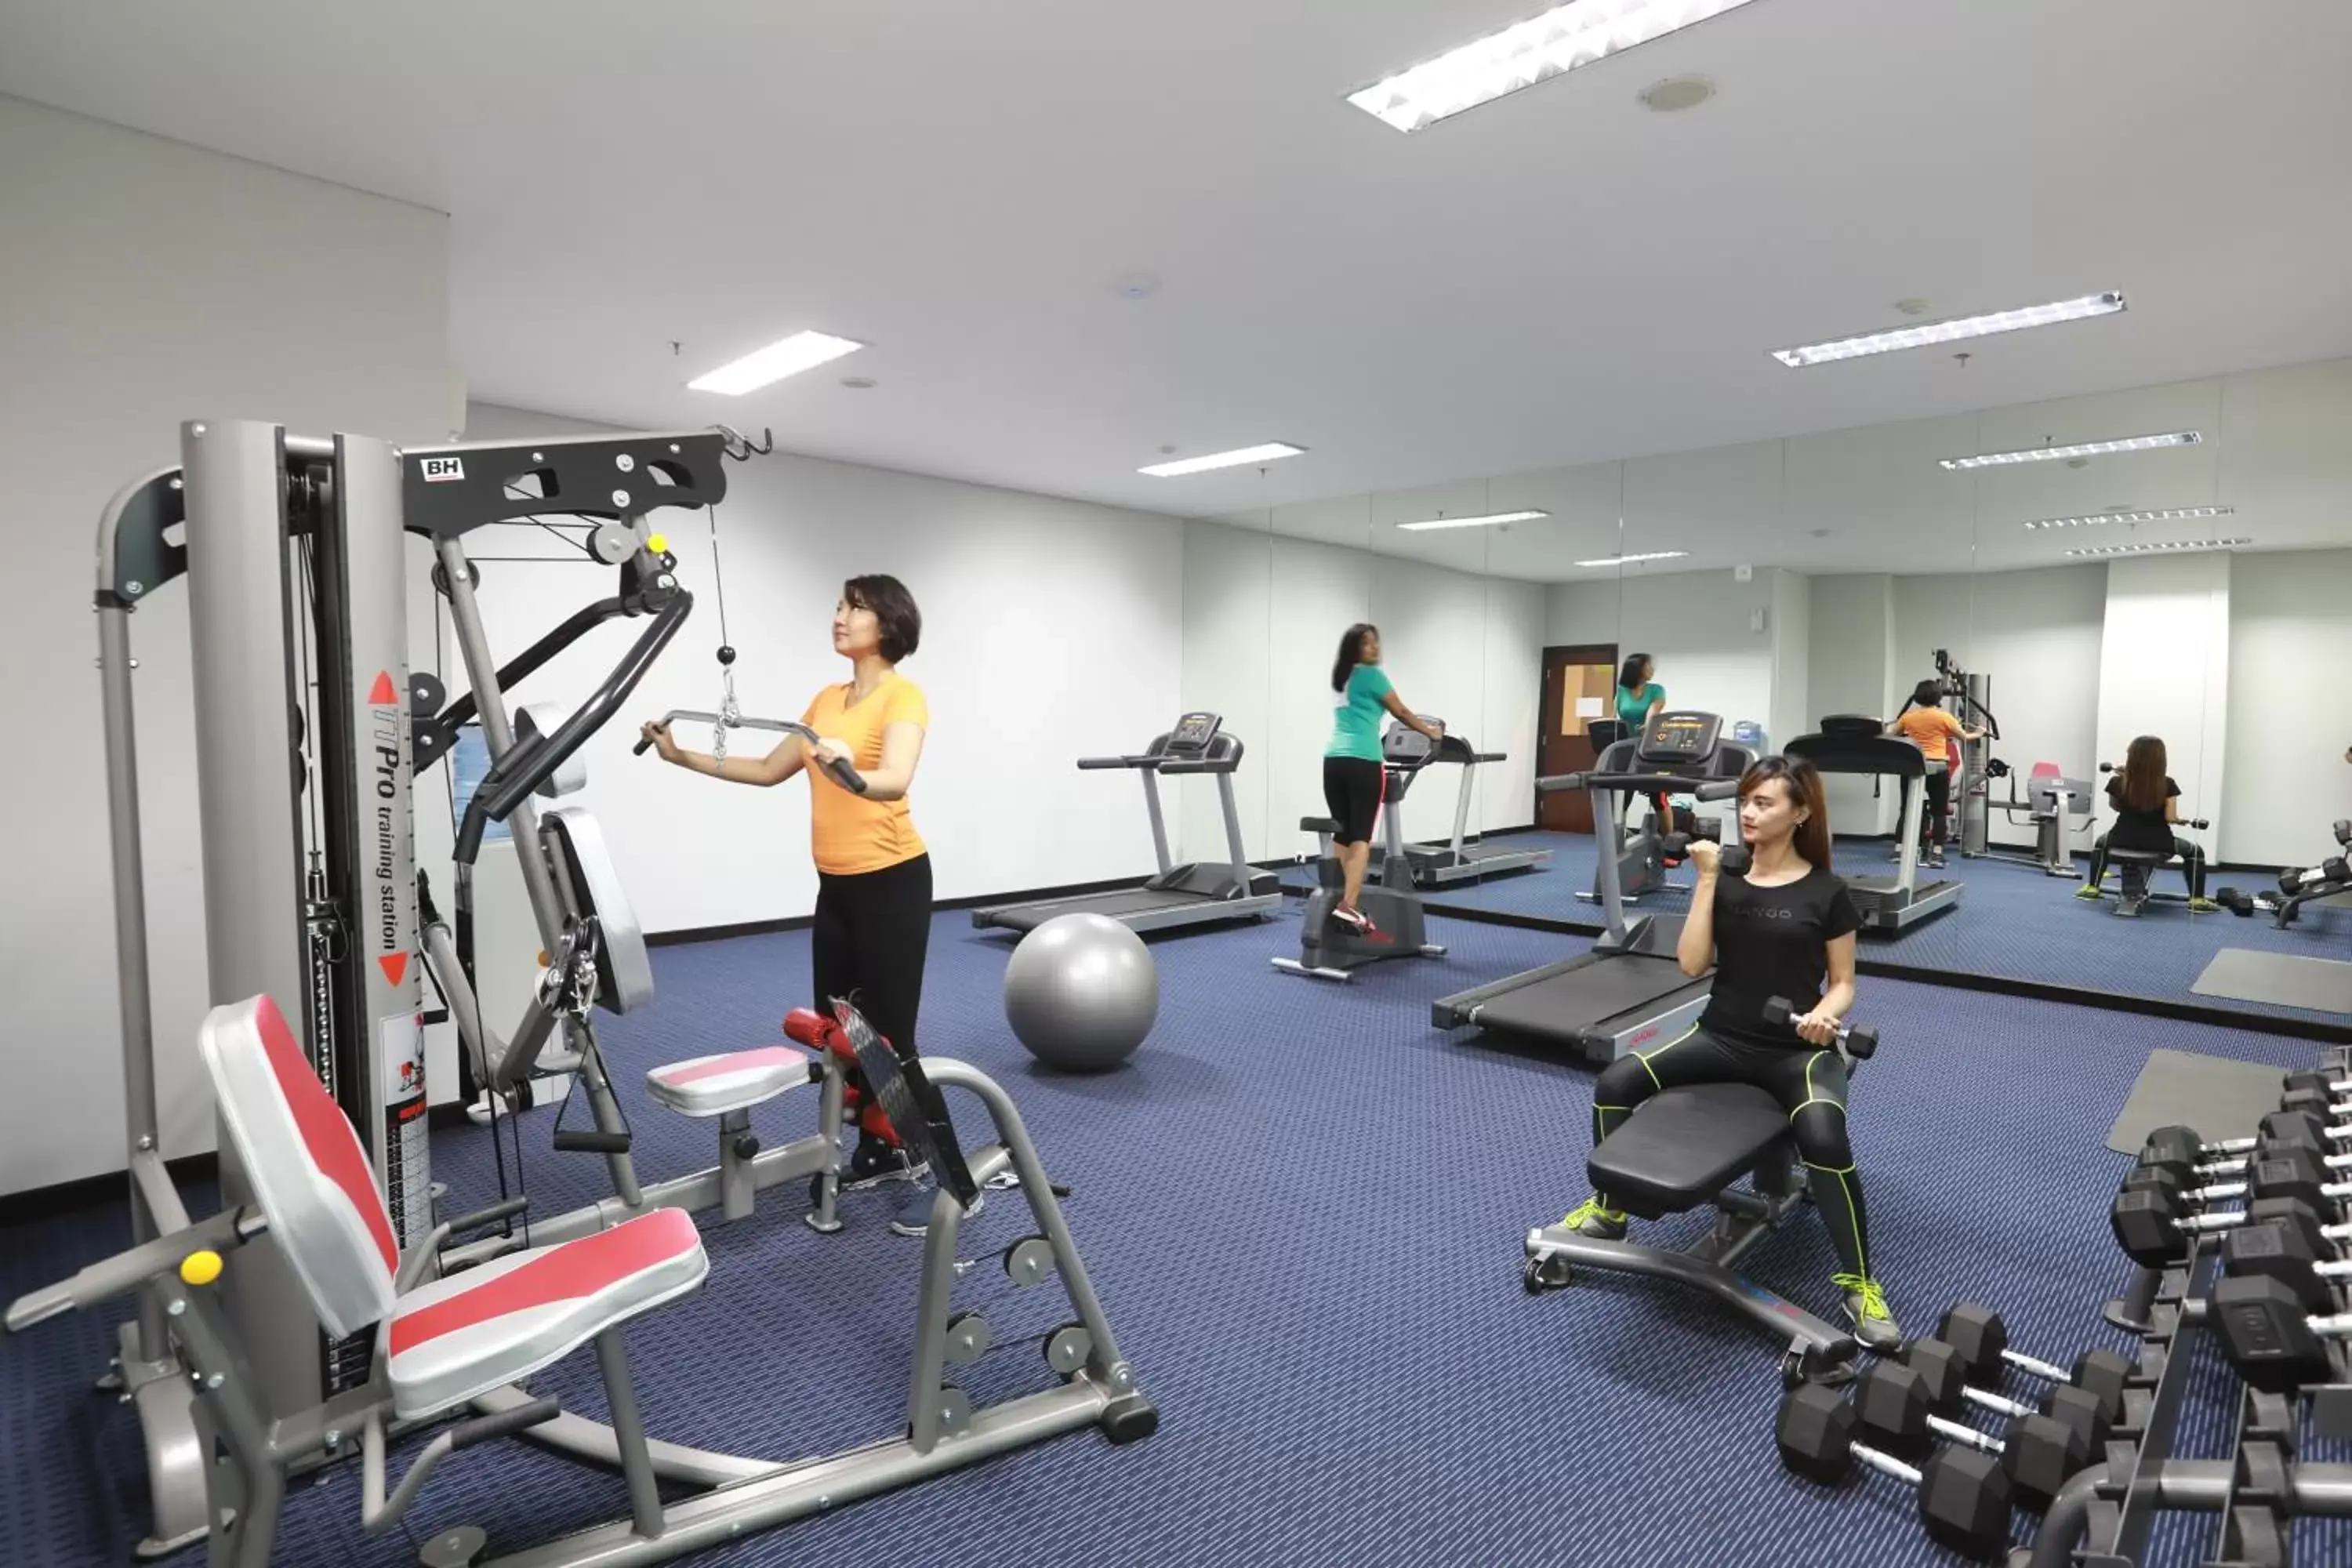 Fitness centre/facilities, Fitness Center/Facilities in PrimeBiz Hotel Surabaya